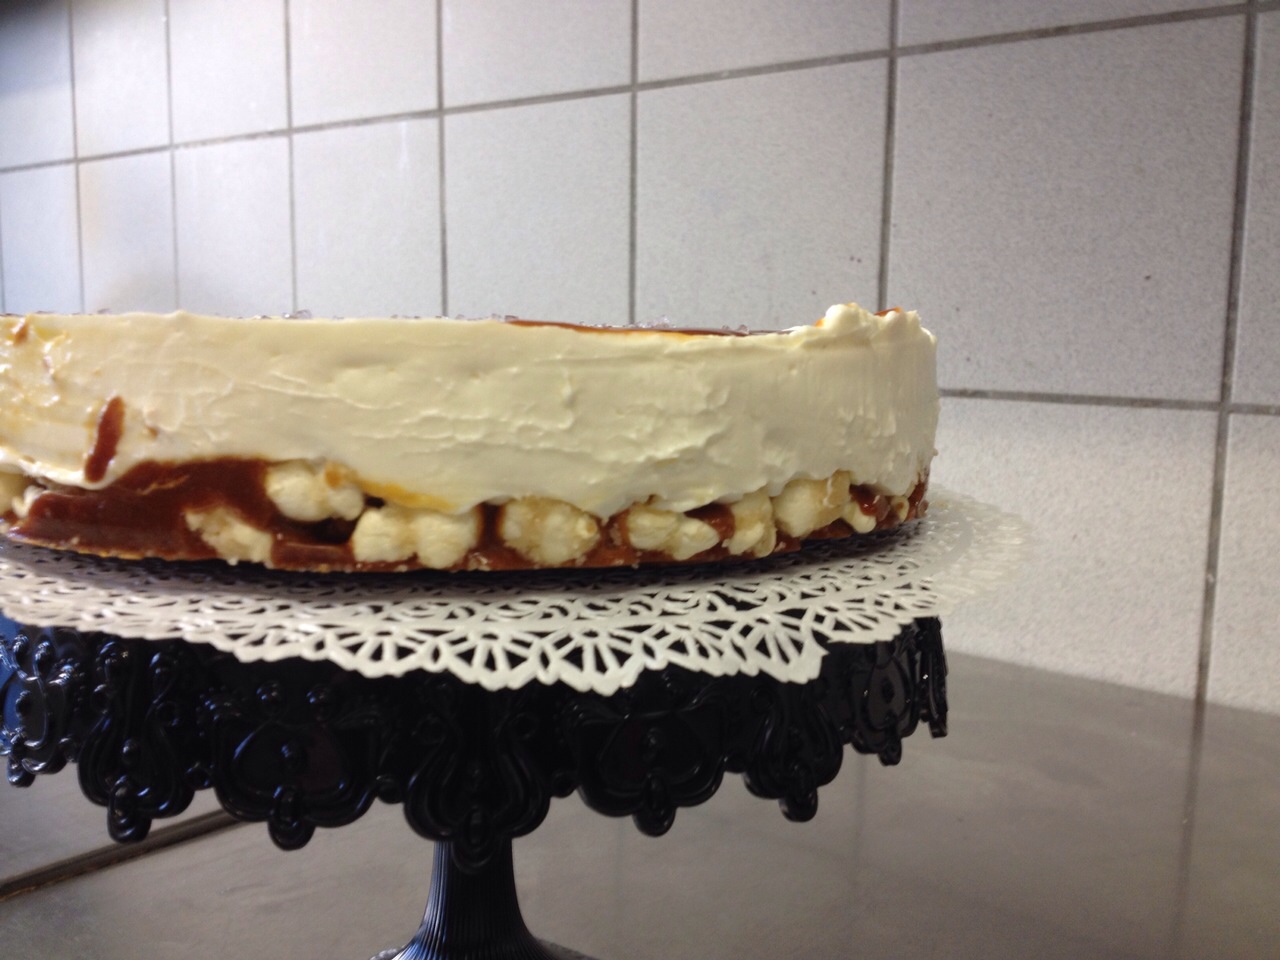 Cheesecake a freddo con base di mais scoppiato caramellato e copertura al caramello salato2